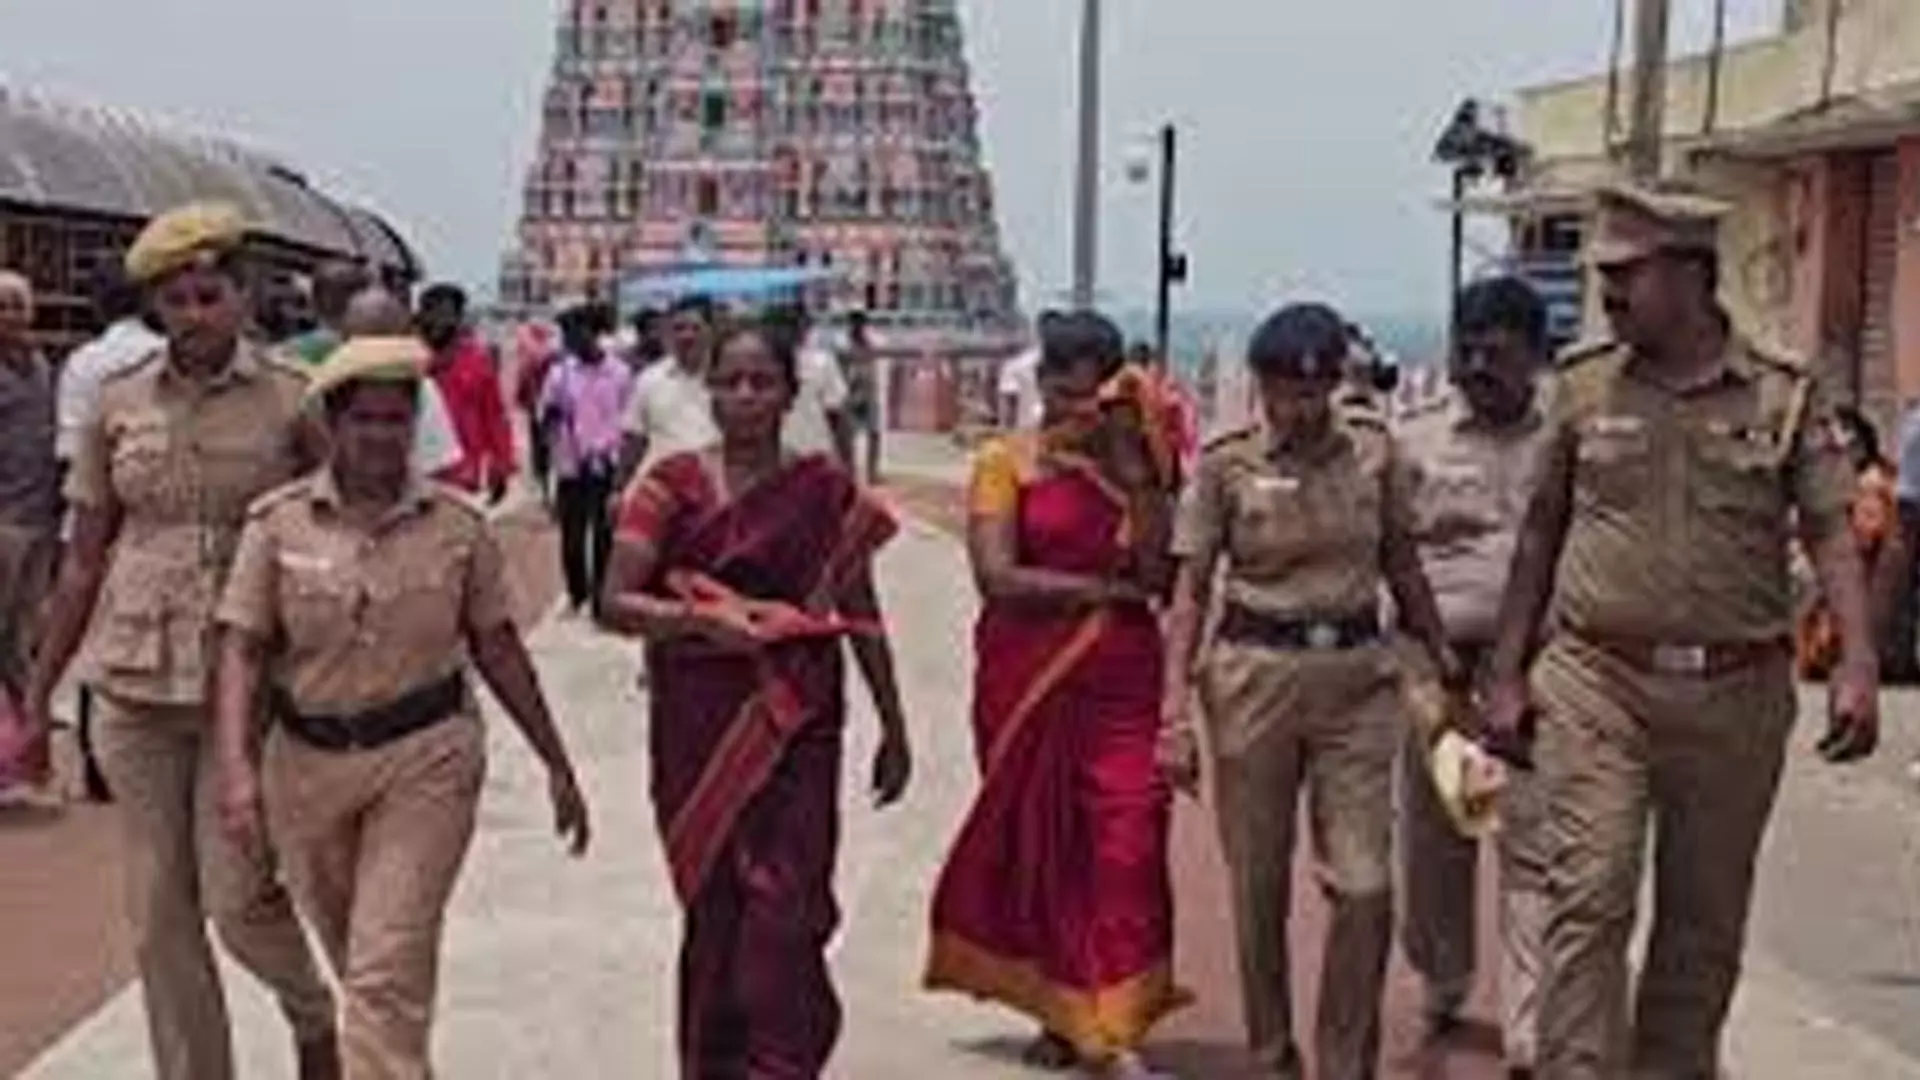 Tamil Nadu News: तिरुत्तनी मंदिर से 1.15 लाख रुपये चोरी के आरोप में दो कर्मचारी गिरफ्तार